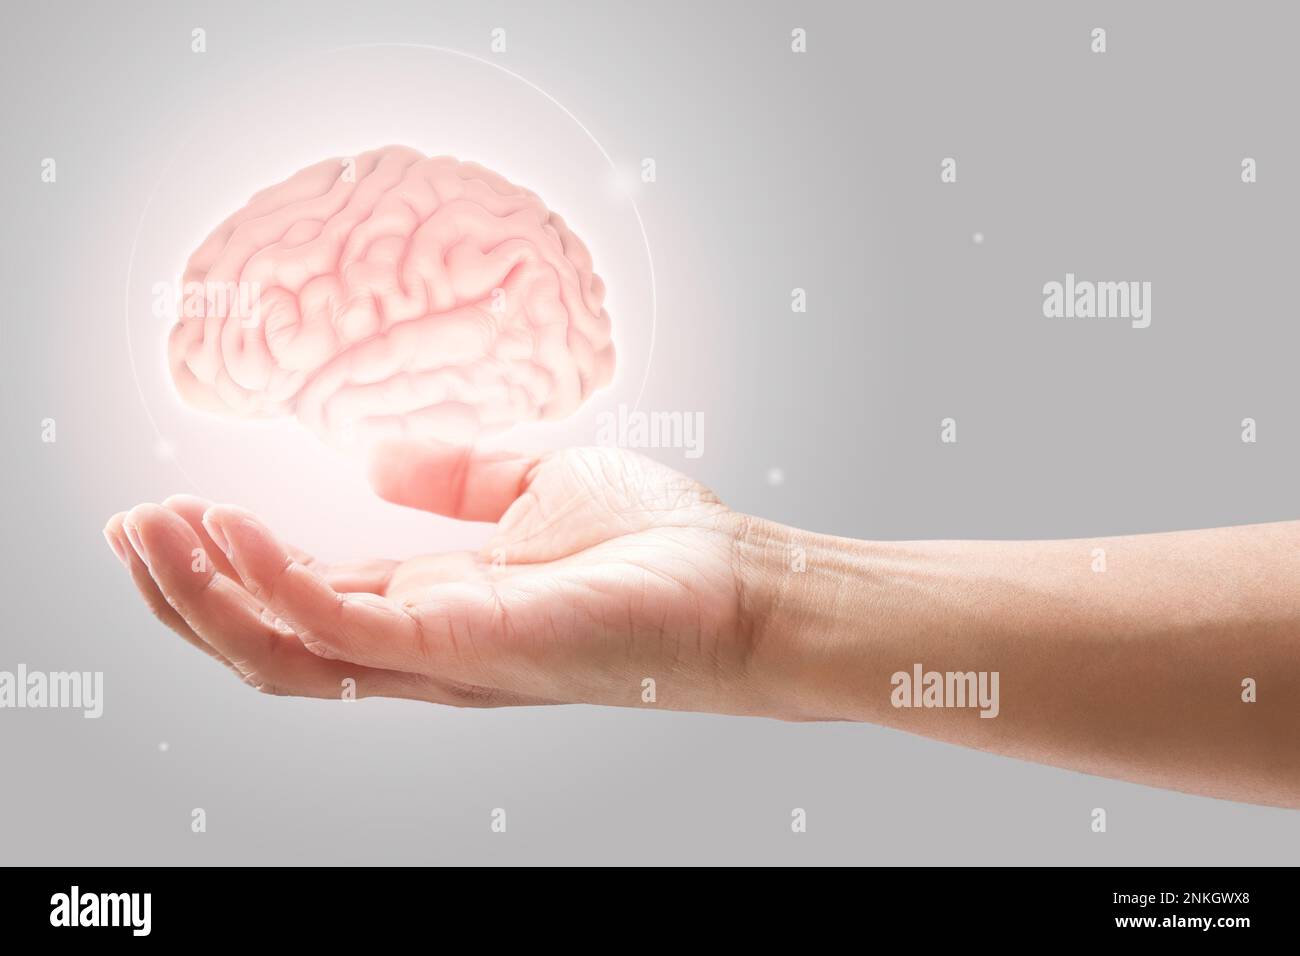 Mann hält Gehirn Abbildung gegen grauen Hintergrund. Konzept mit der psychischen Gesundheit Schutz und Pflege. Stockfoto